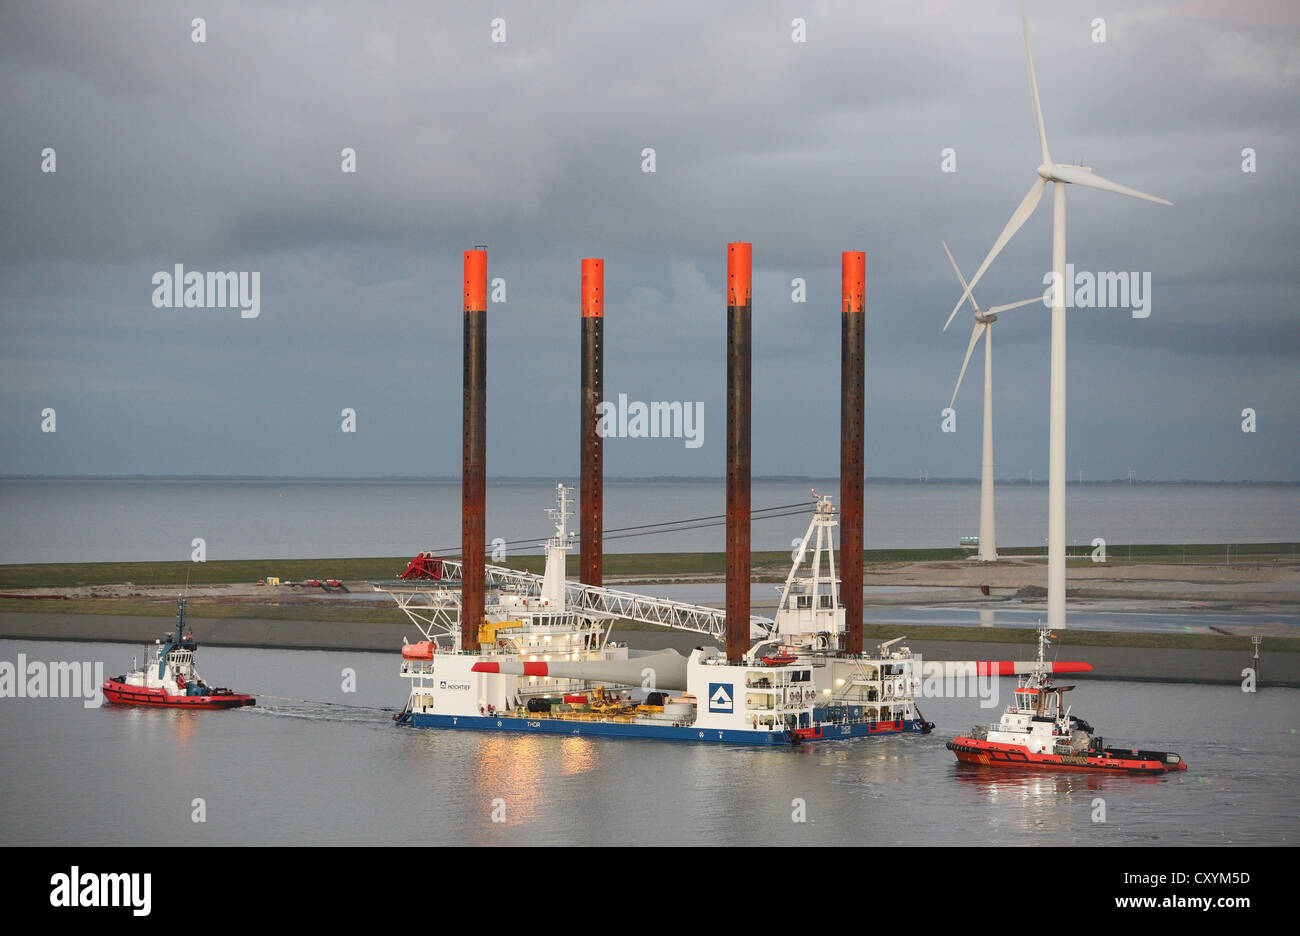 Schiff verwendet für der Bau von Offshore-Windparks Eemshaven tragen eine Wind-Turbine-Kopf verlässt, geleitet von Schleppboote. Stockfoto